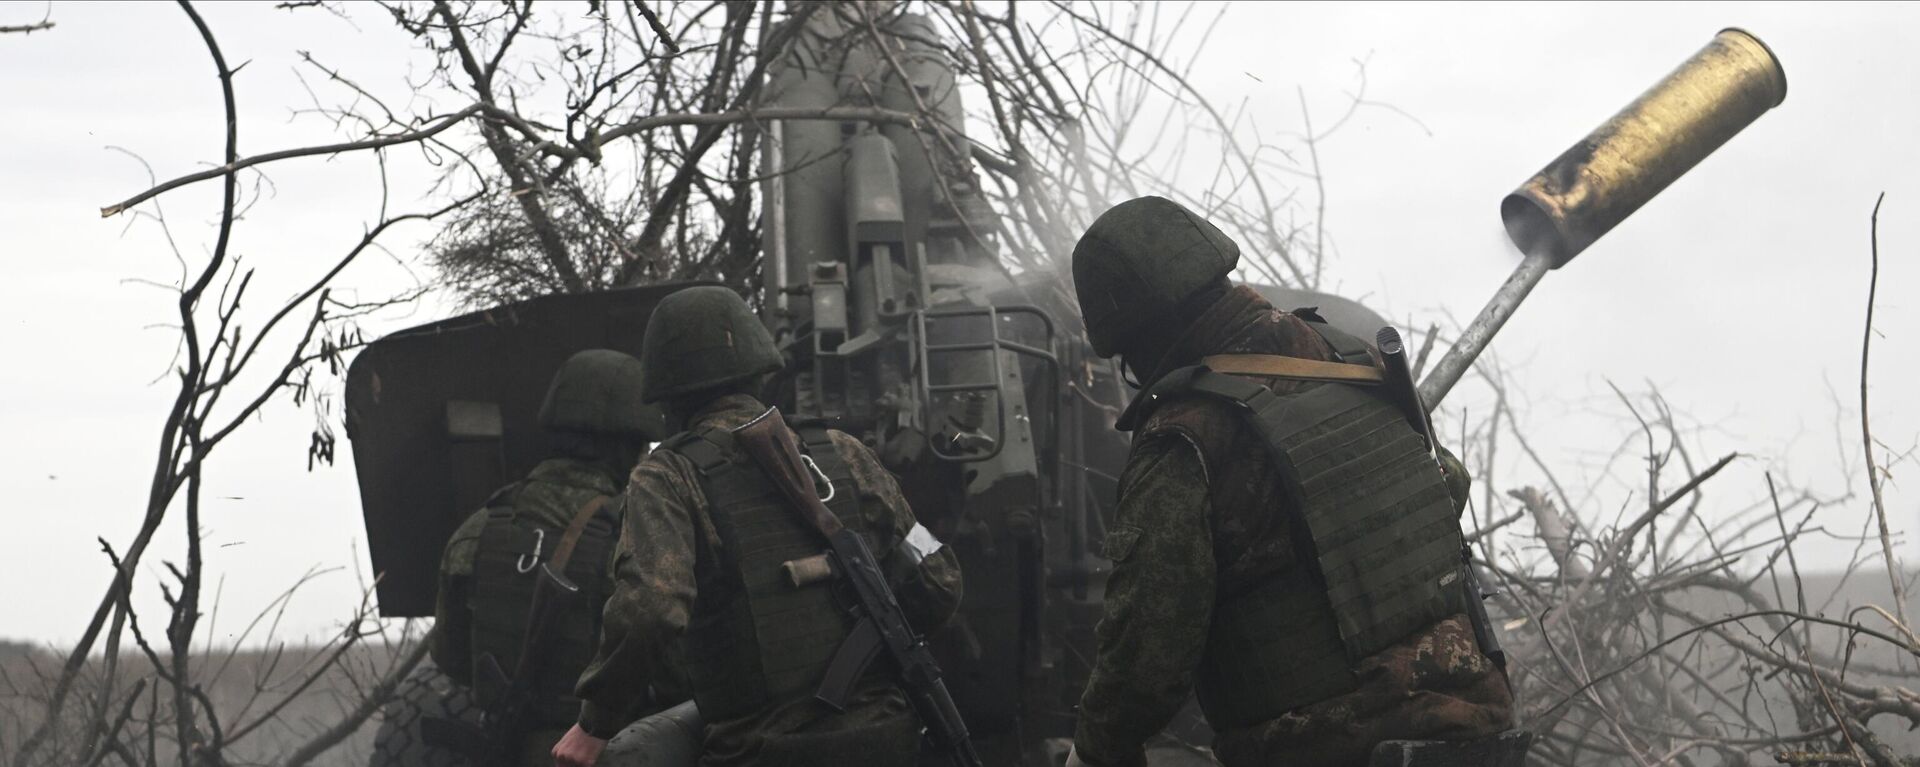 مدفعية القوات المسلحة الروسية تطلق النار على مواقع القوات المسلحة الأوكرانية من مدفع هاوتزر مستا-بي في المنطقة الجنوبية من منطقة العملية العسكرية الخاصة في أوكرانيا - سبوتنيك عربي, 1920, 21.03.2023